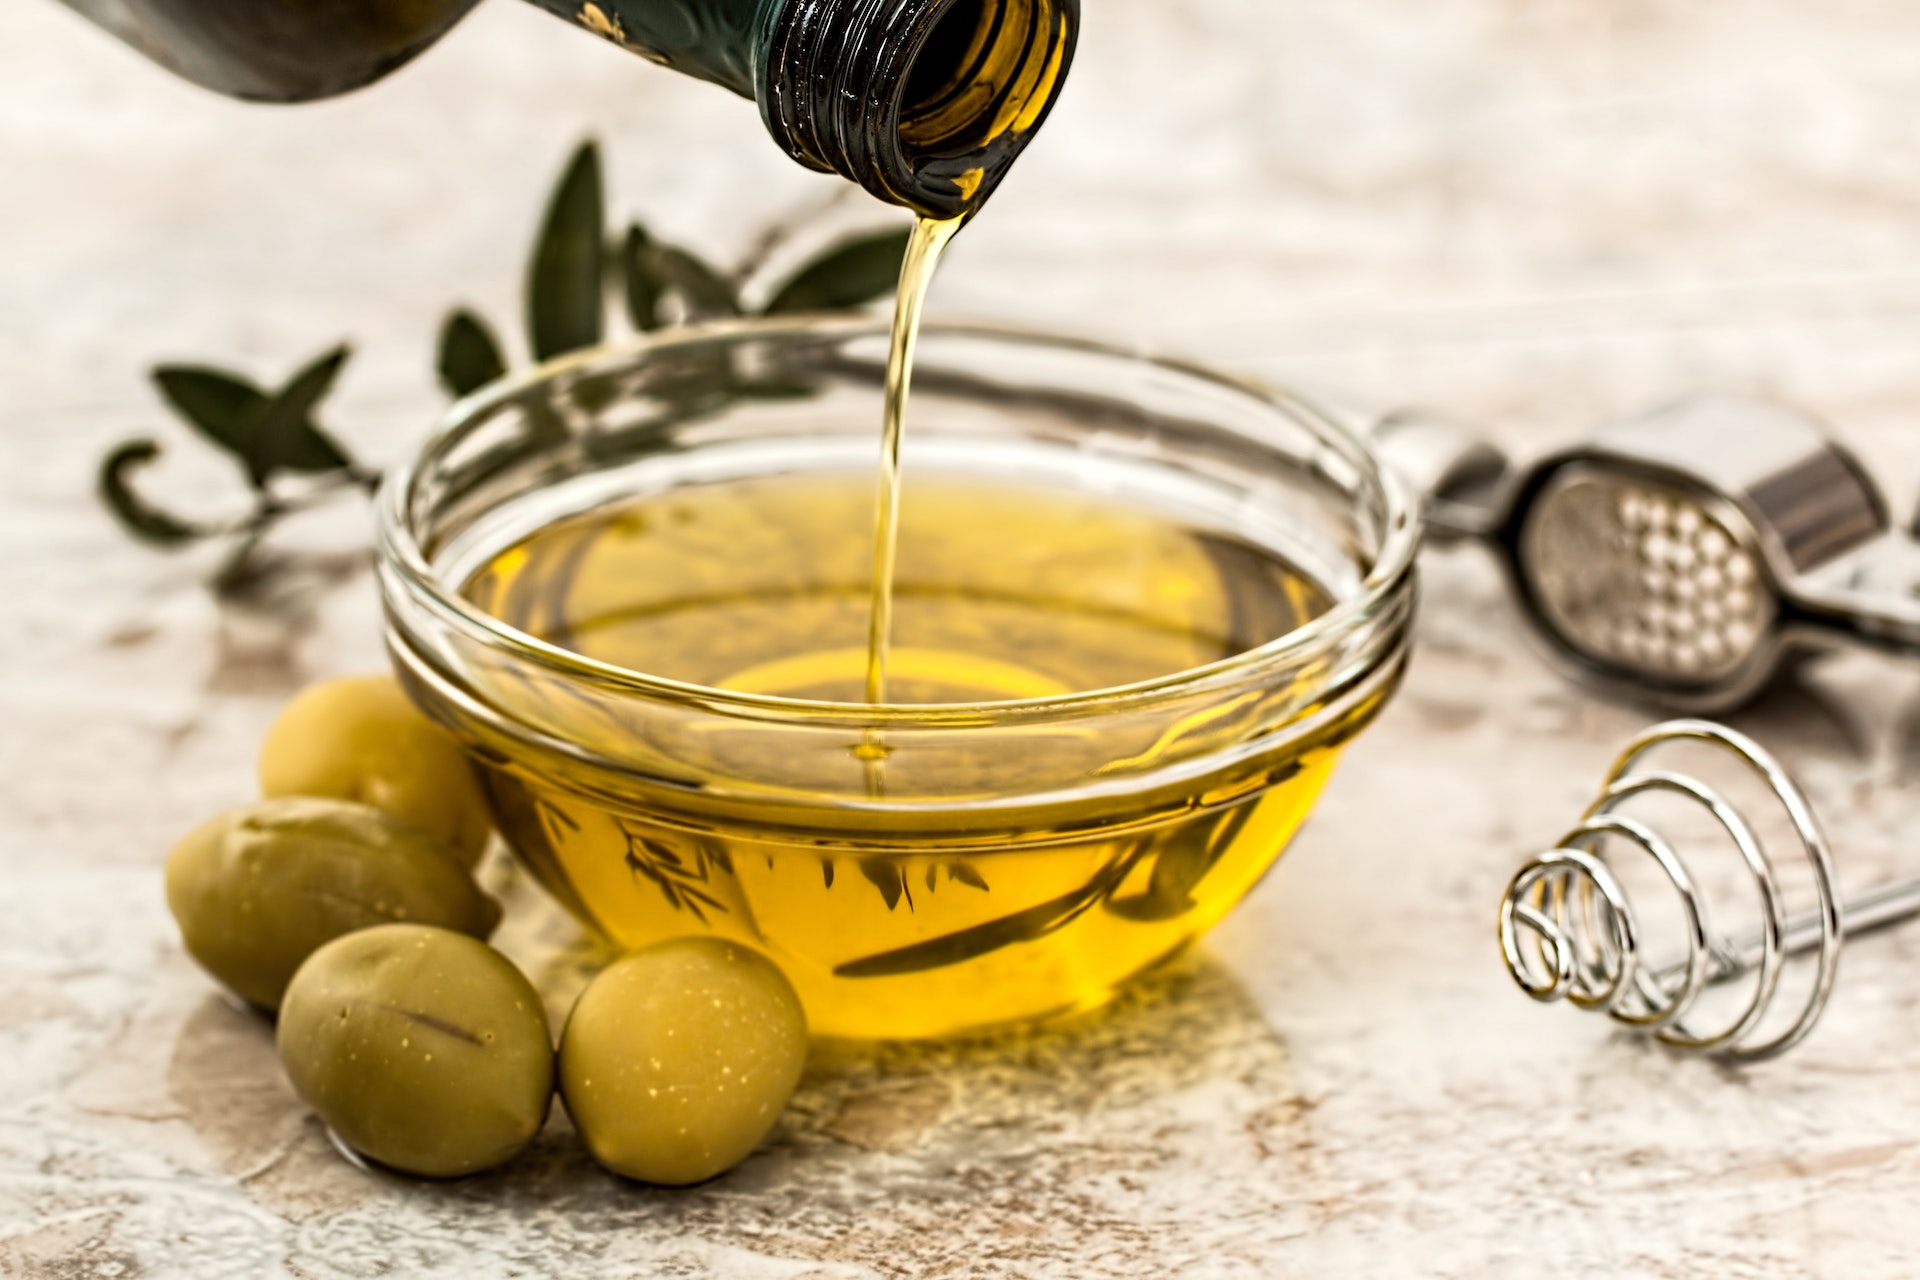 L'olio d'oliva è il condimento mediterraneo per eccellenza ed è onnipresente nelle cucine italiane. Proprietà, controindicazioni e possibili sostituti.